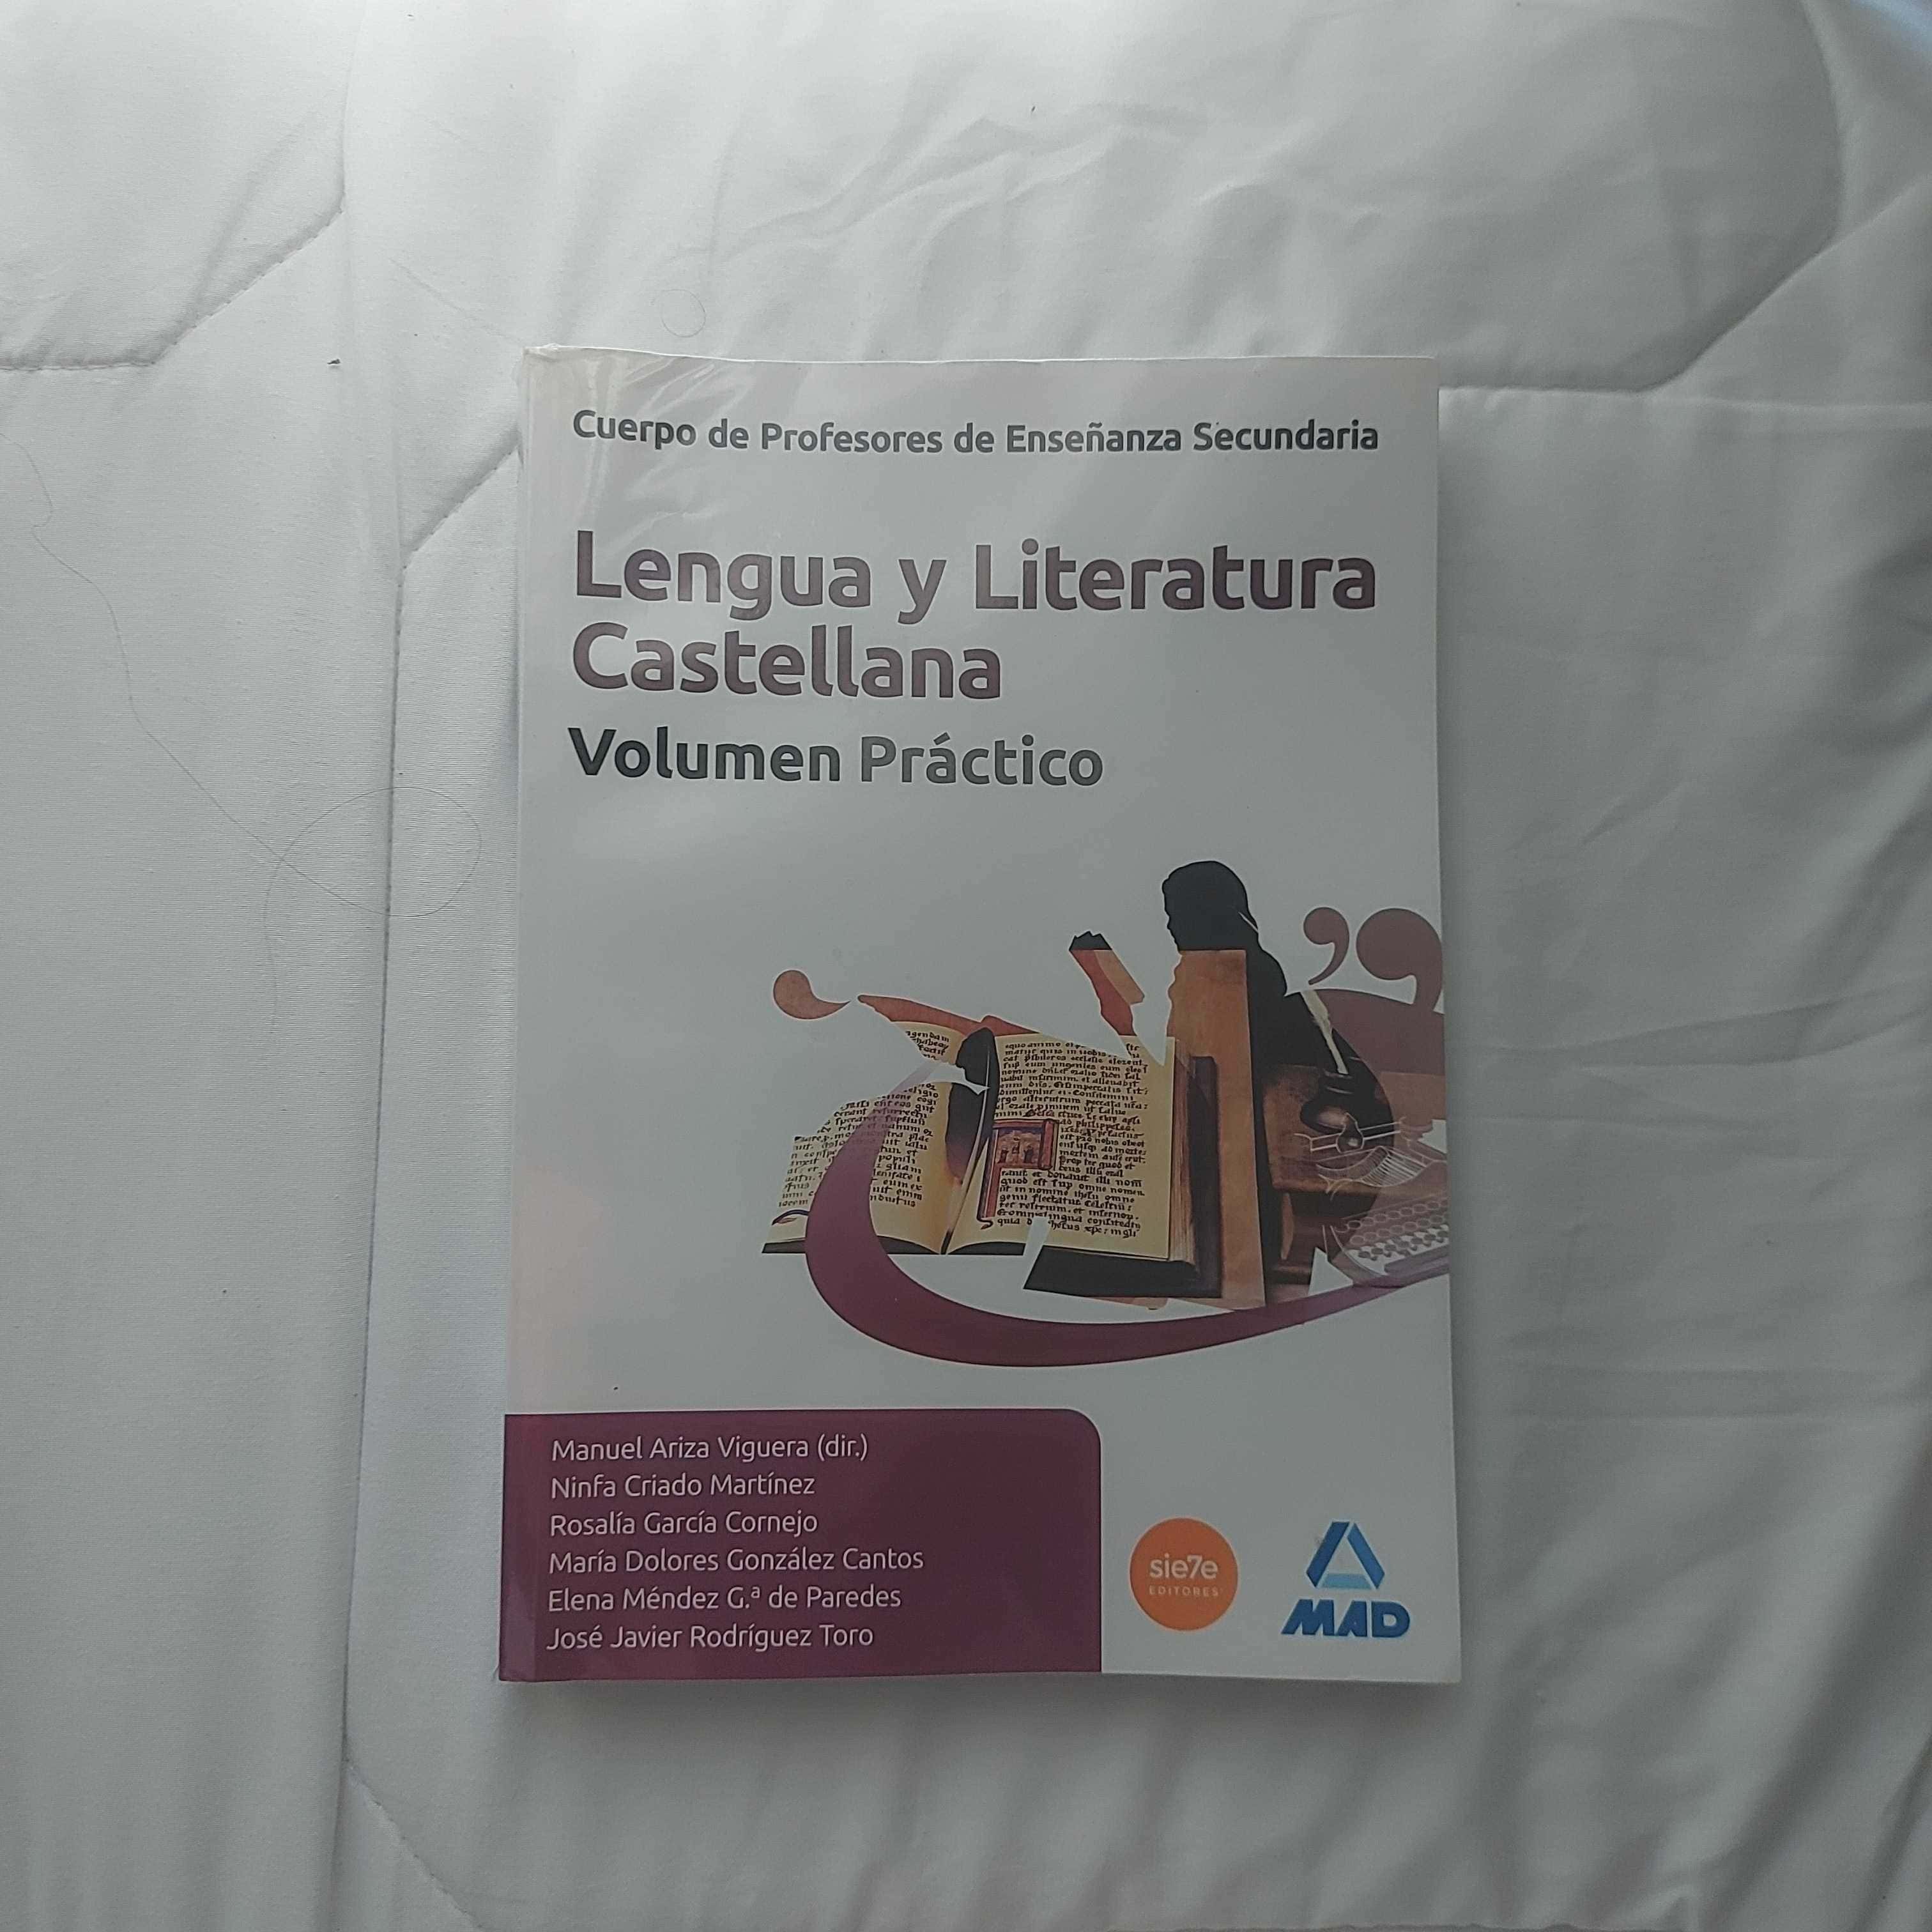 Libro de segunda mano: Cuerpo de Profesores de Enseñanza Secundaria, lengua castellana y literatura. Volumen práctico